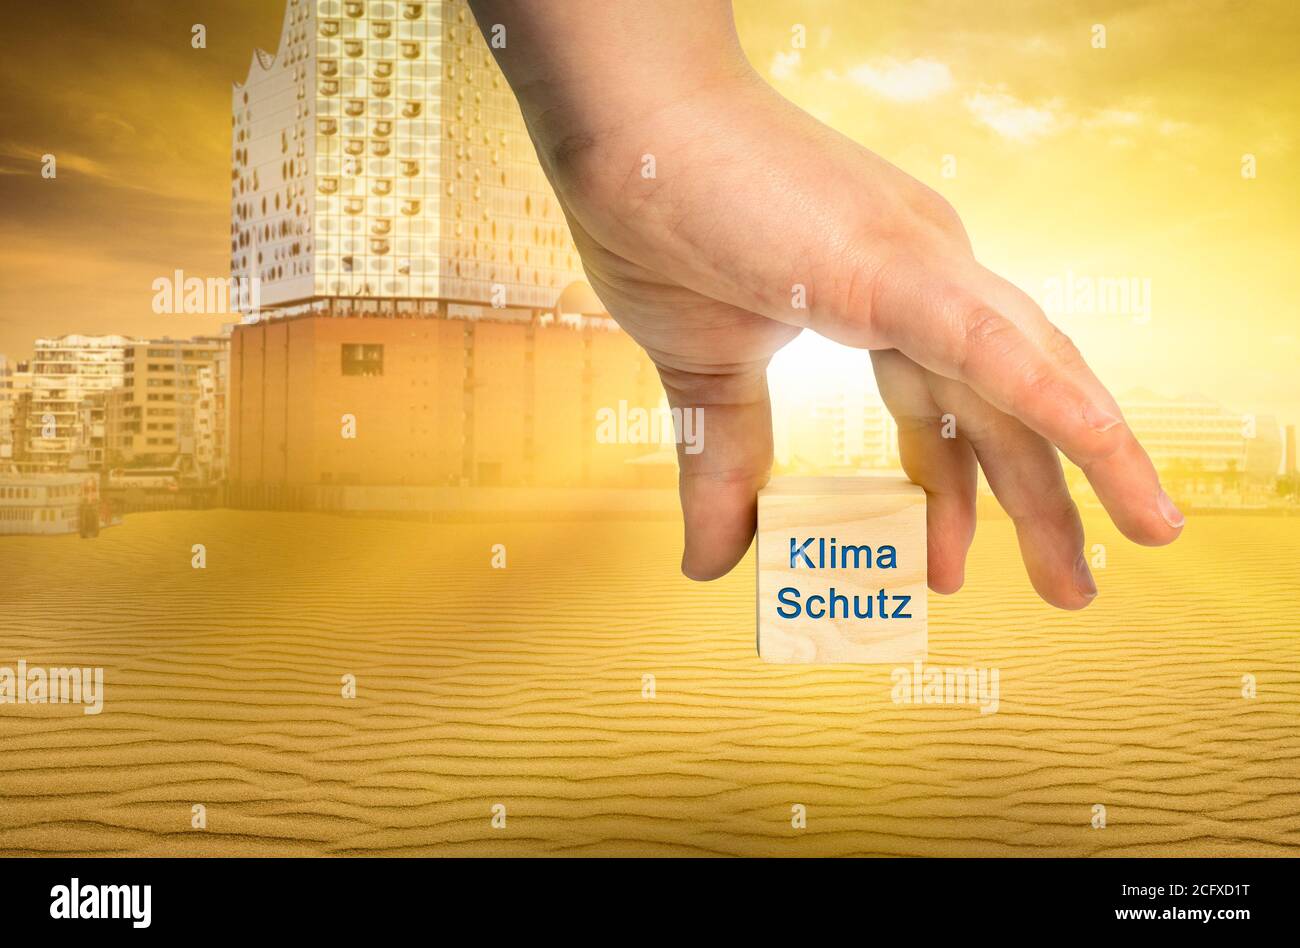 Protection du climat basée sur une image abstraite de Hambourg représenté Avec un cube avec l'inscription allemande Climate protection Banque D'Images